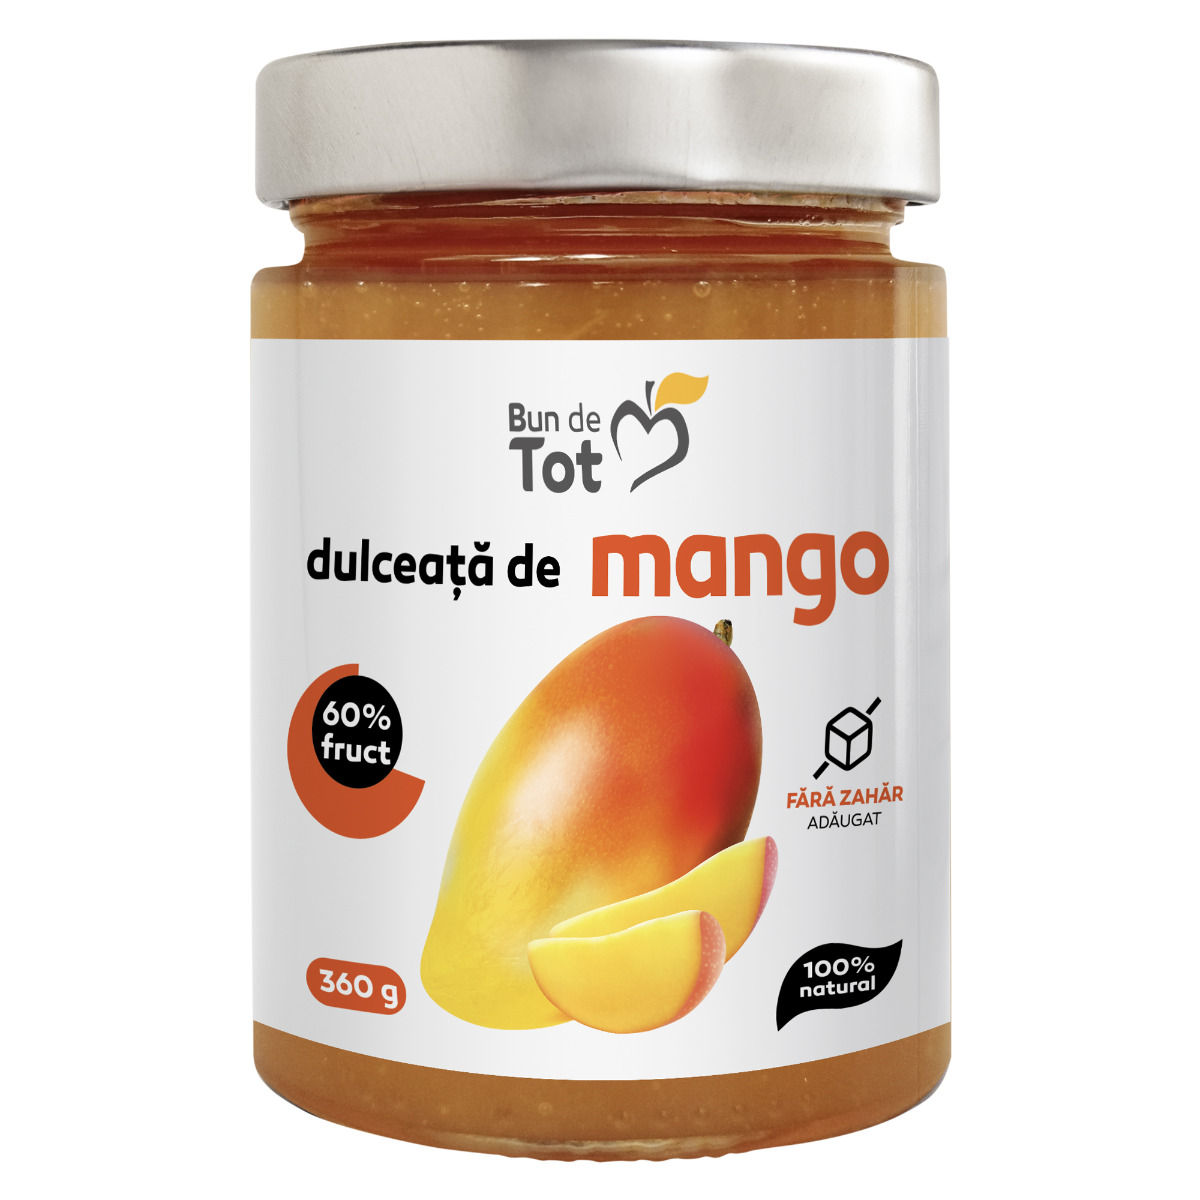 Dulceata de mango 100 NATURAL fara zahar adaugat fara chimicale Bun de Tot imagine noua